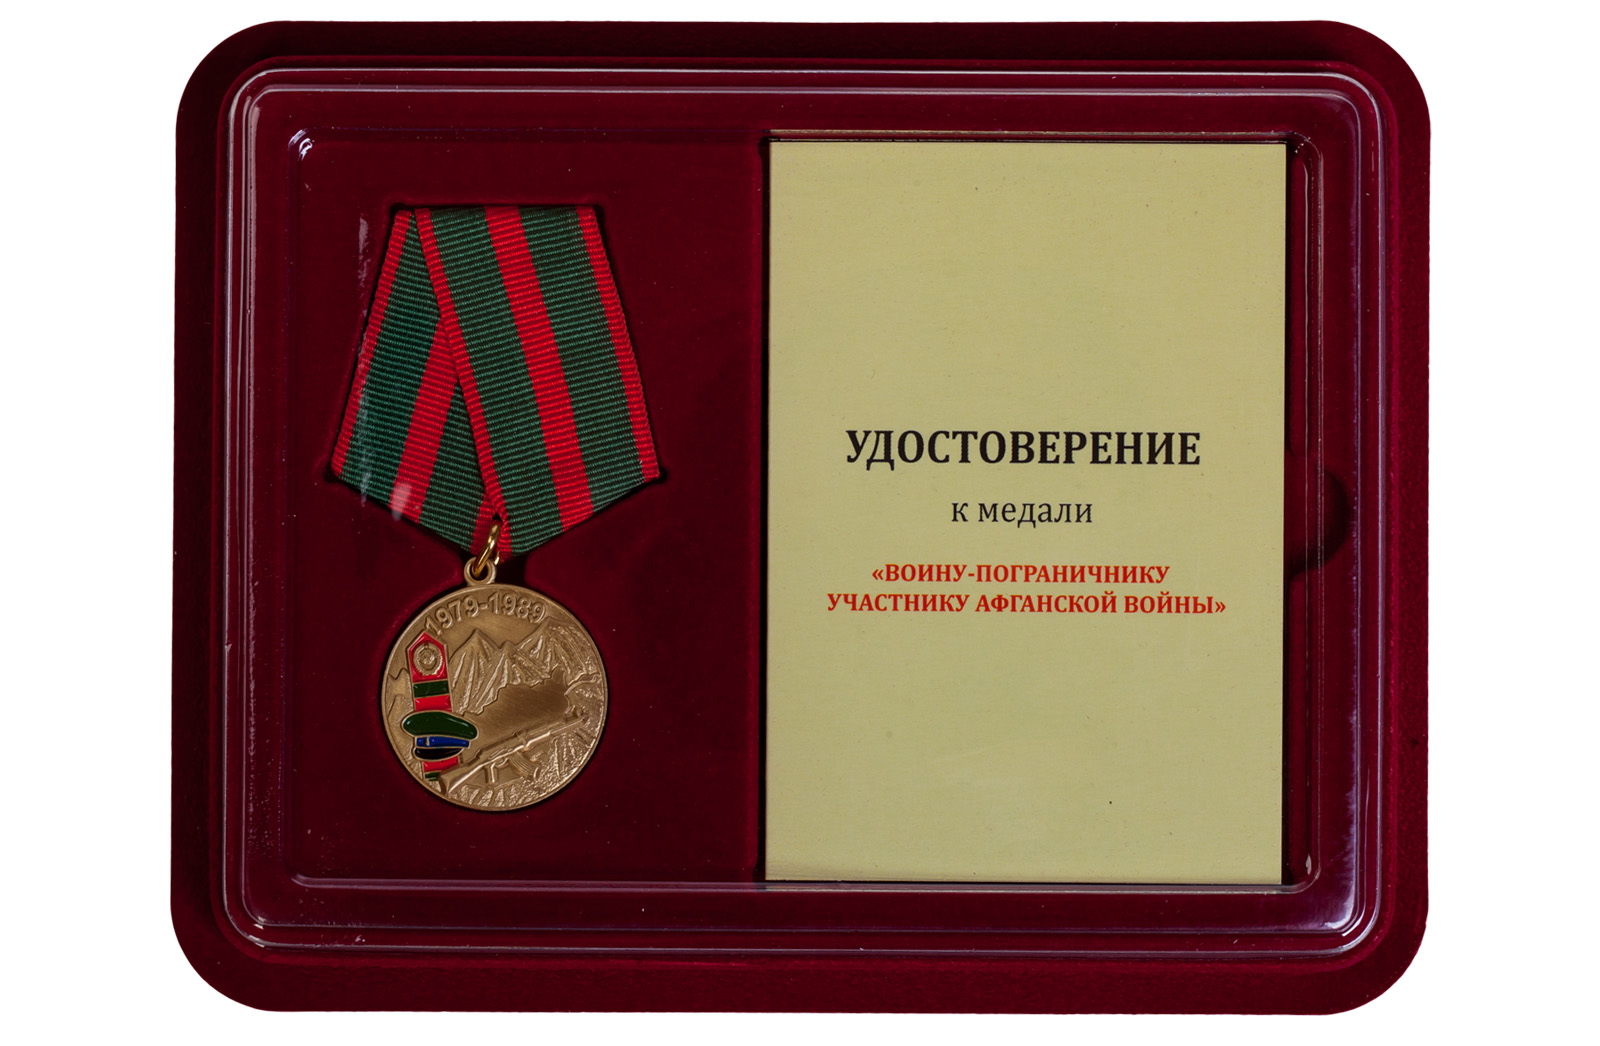 Купить памятную медаль Воину-пограничнику, участнику Афганской войны с доставкой